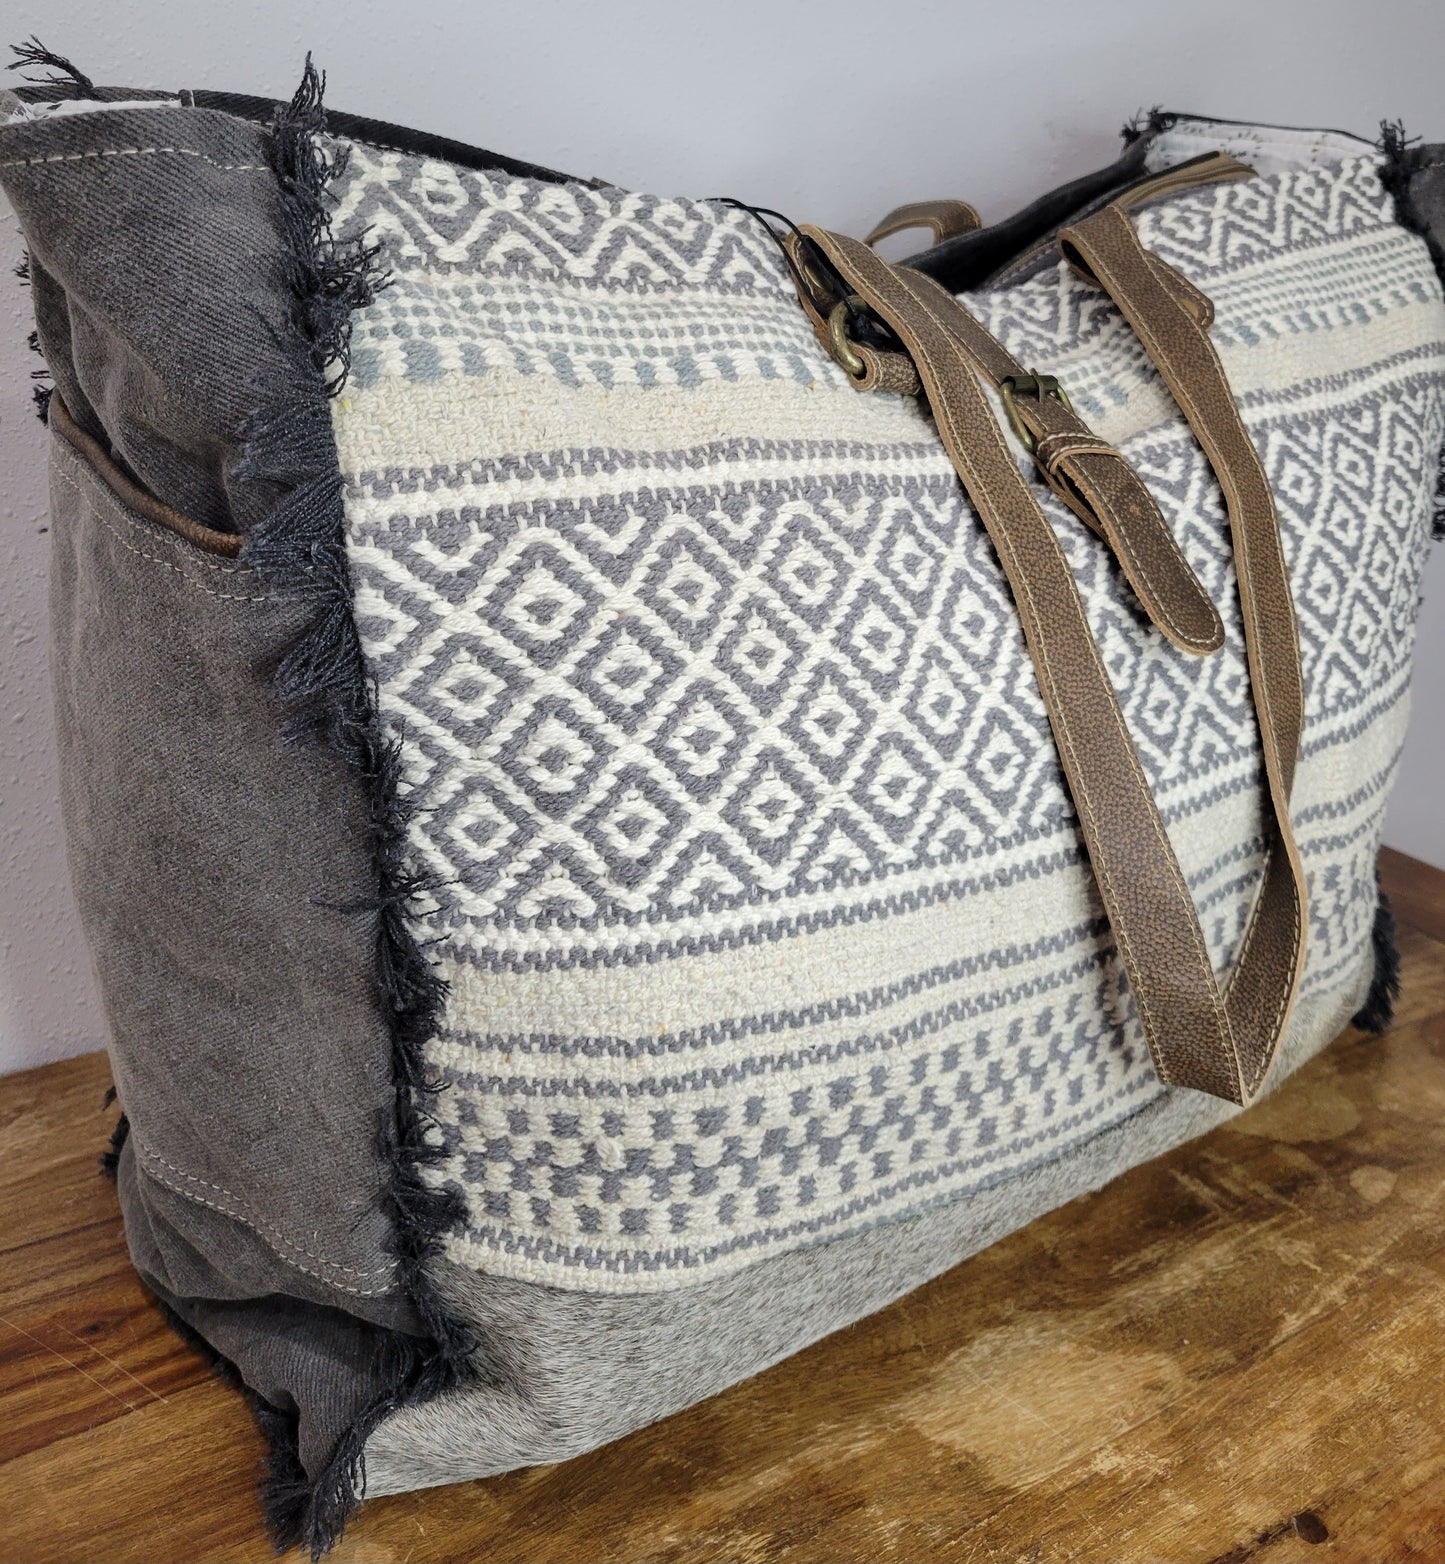 Myra Bag Minimal Rhombus Patterned Weekender Bag